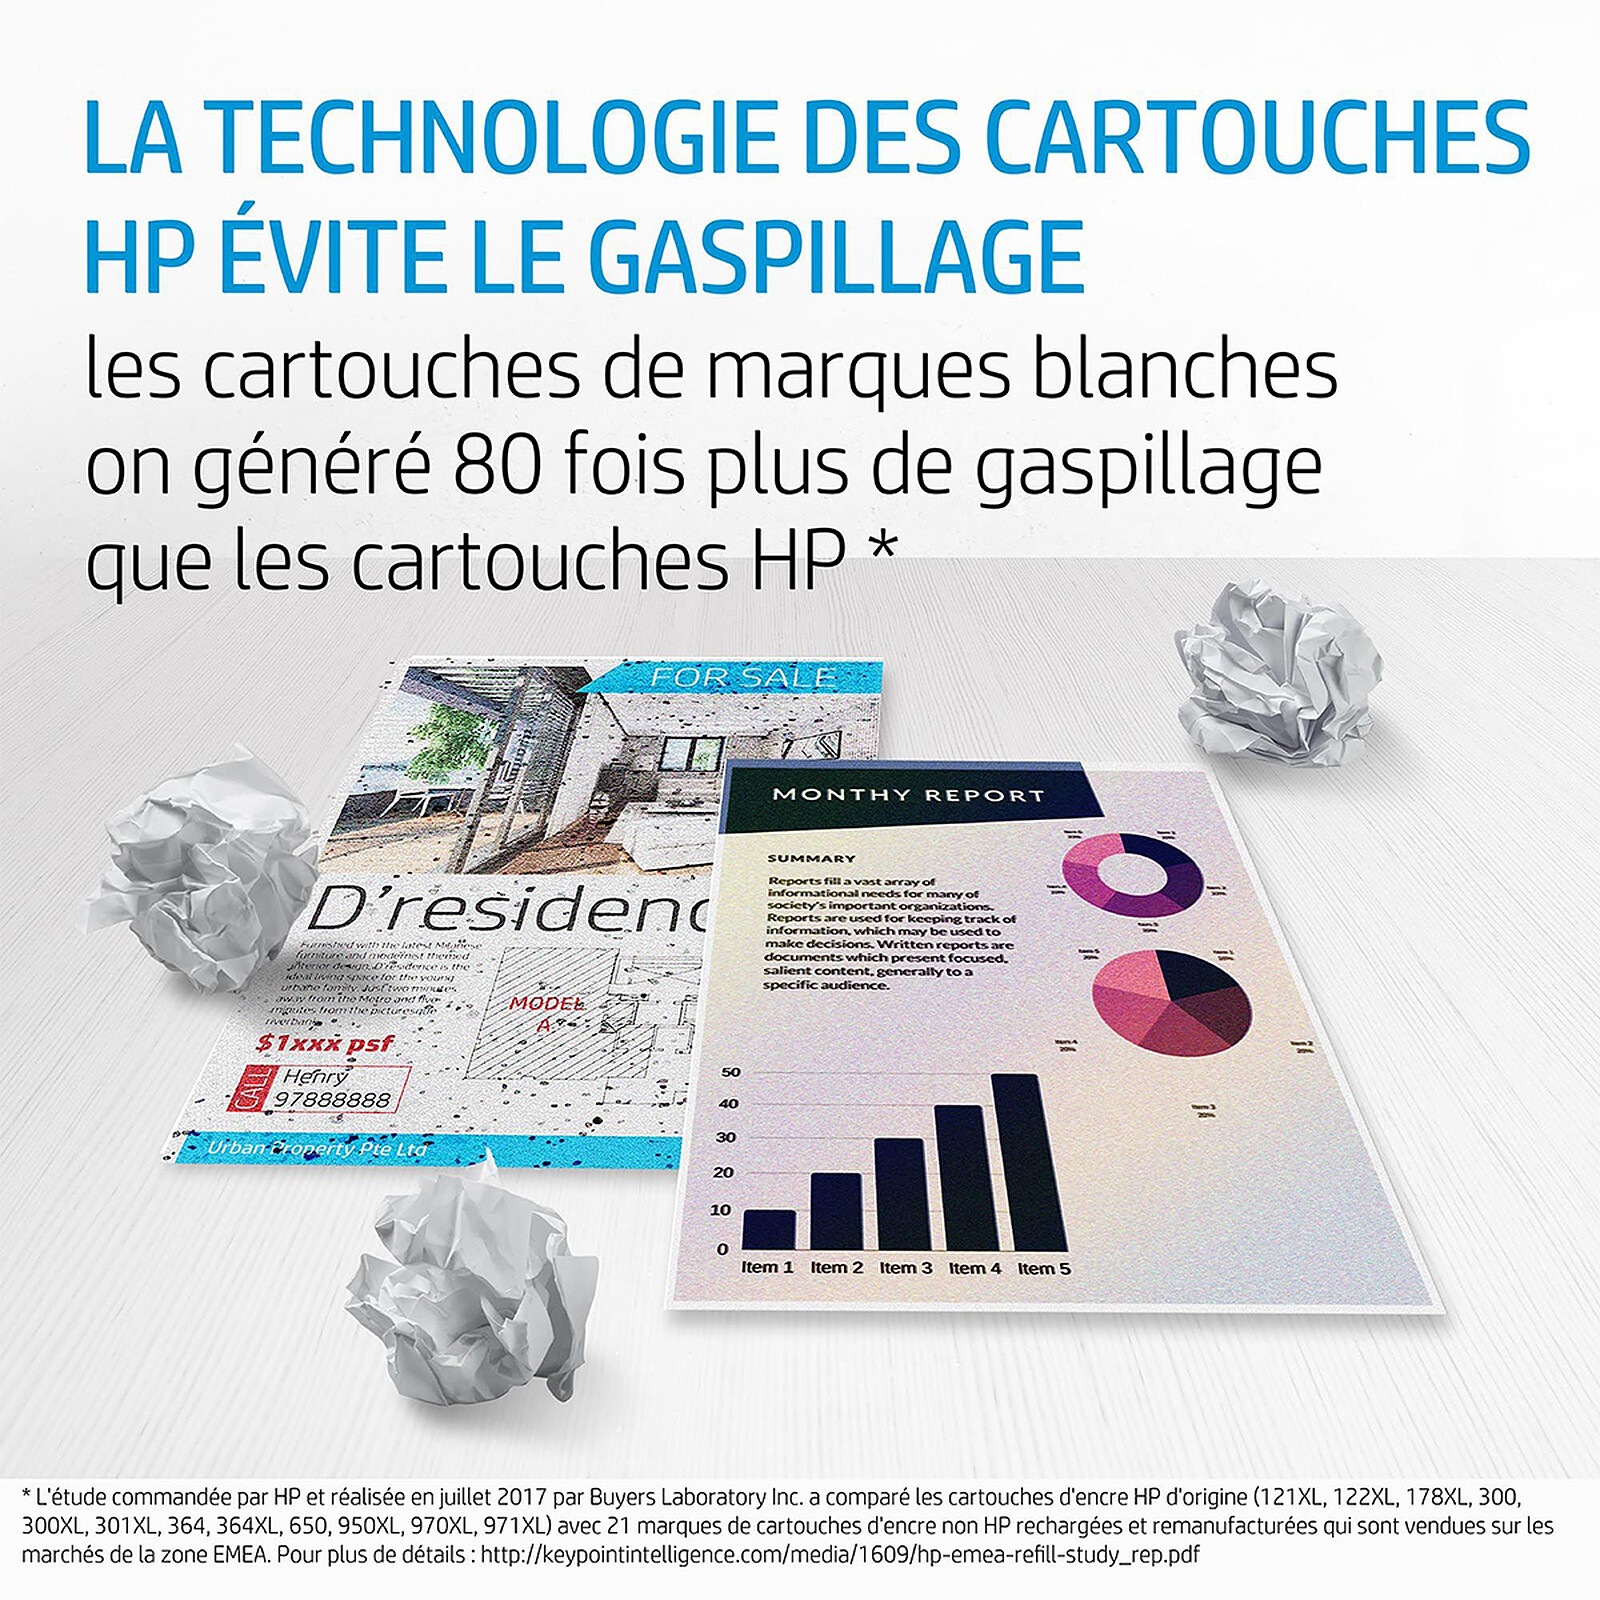 HP 903 Pack de 4 Cartouches d'Encre Noire, Cyan, Magenta, Jaune  Authentiques (6ZC73AE) pour HP OfficeJet 6950, HP OfficeJet Pro 6960 / 6970  : : Informatique